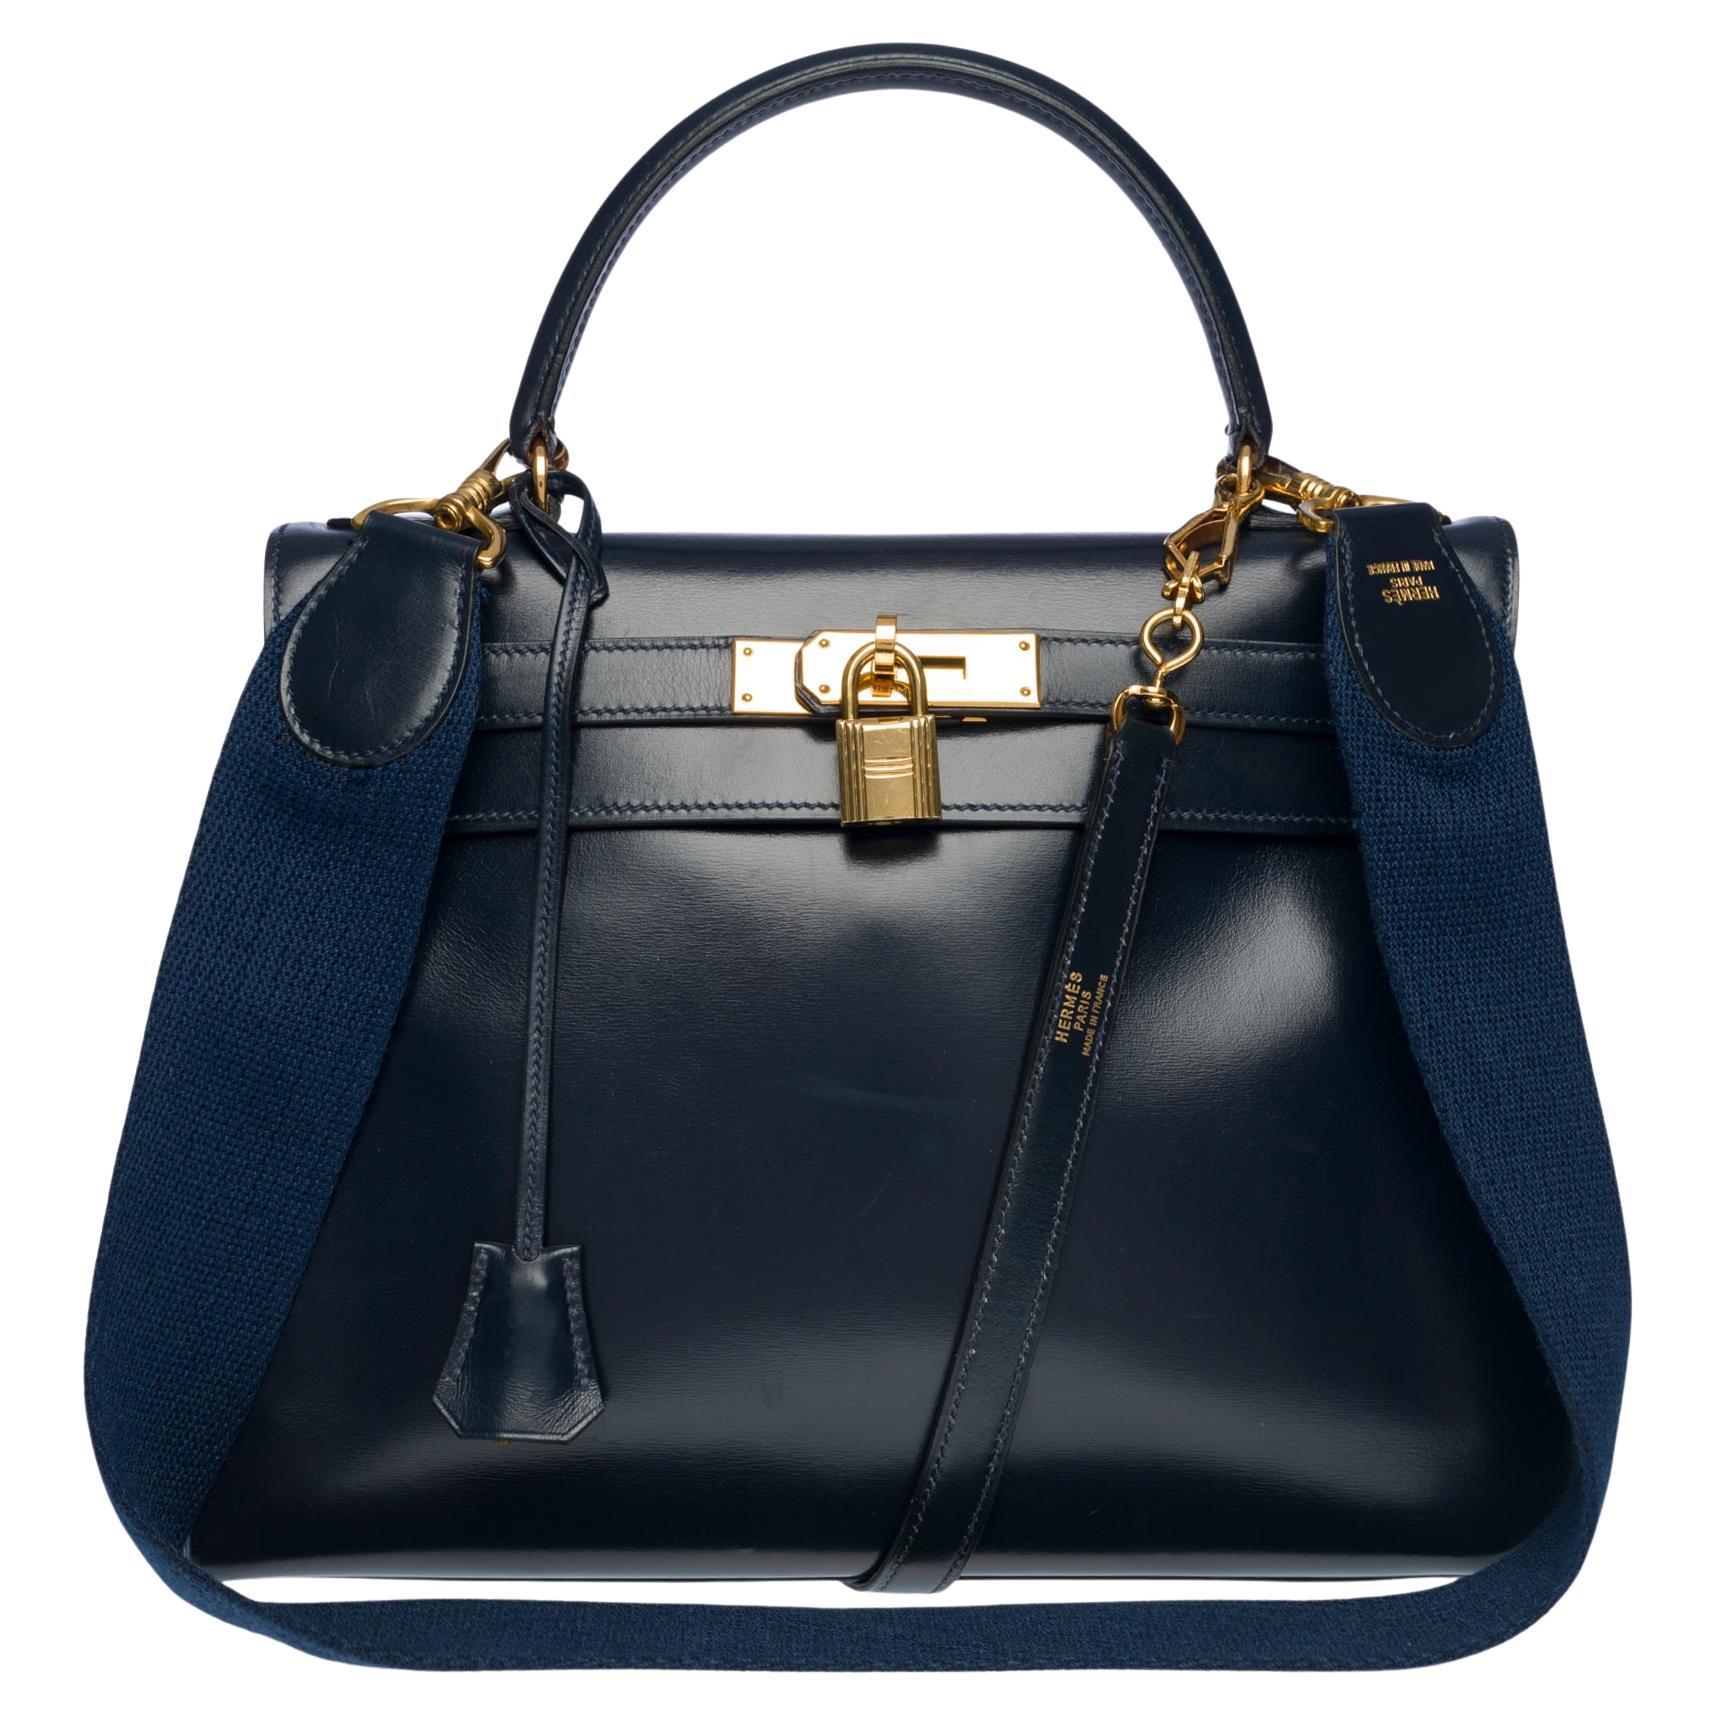 Rare Hermes Kelly 28 retourne handbag double strap in Navy blue box calfskin,GHW